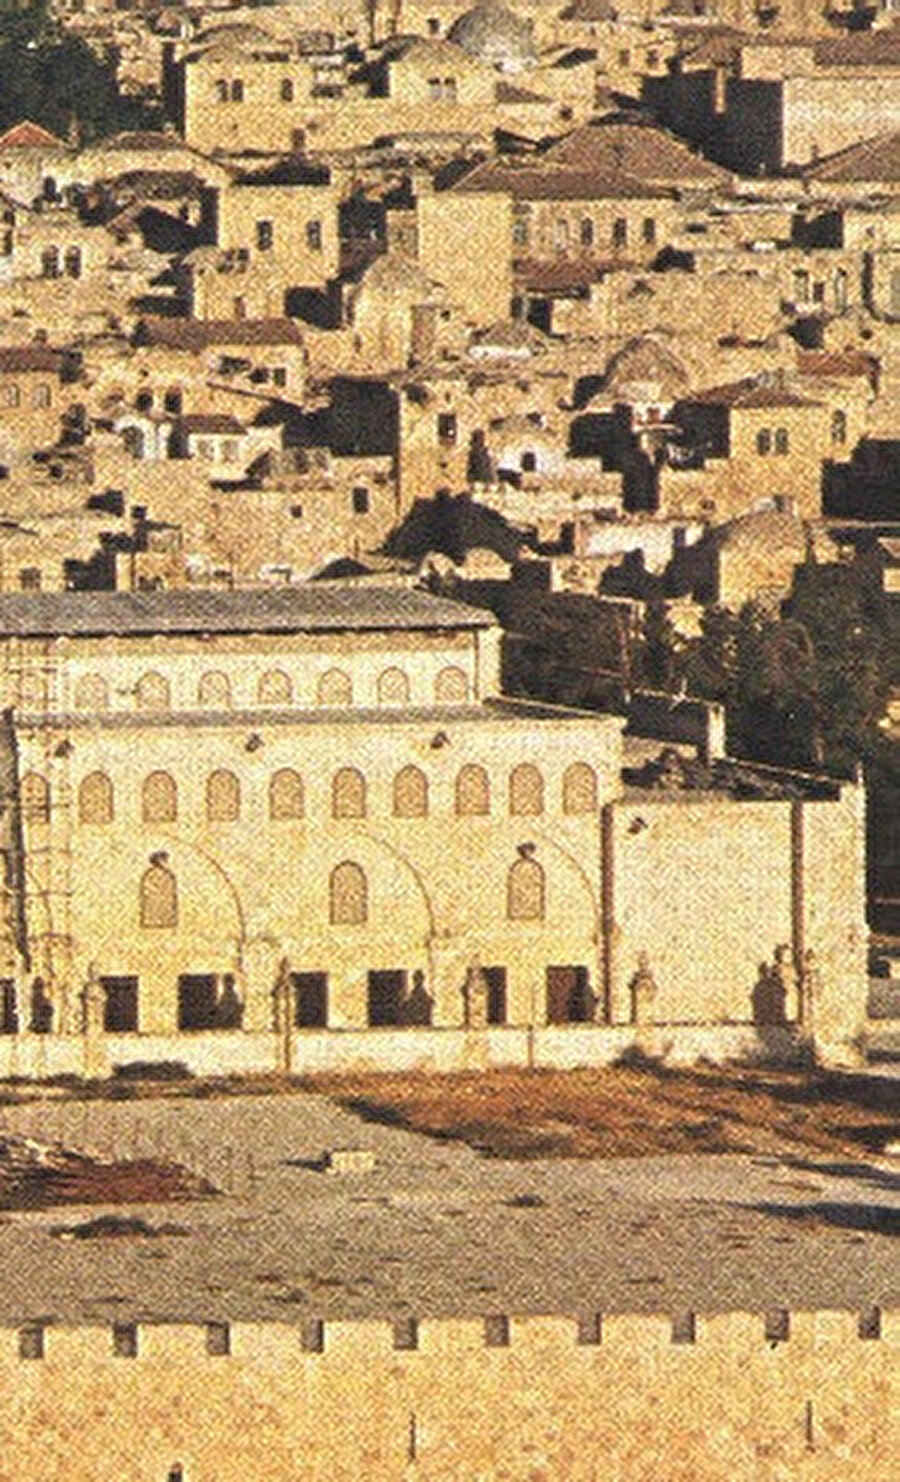 Şekil 5 Solda: Kudüs’teki Aksa Camii’nin bugünkü görünümü. Siyah renk, bugünkü Aksa Camii’de görülebilen Müslümanlardan kalma kalıntıları (Hamilton, 1949). Üstte: Aksa Camii’nin planı (Duncan, 1972, s.17).